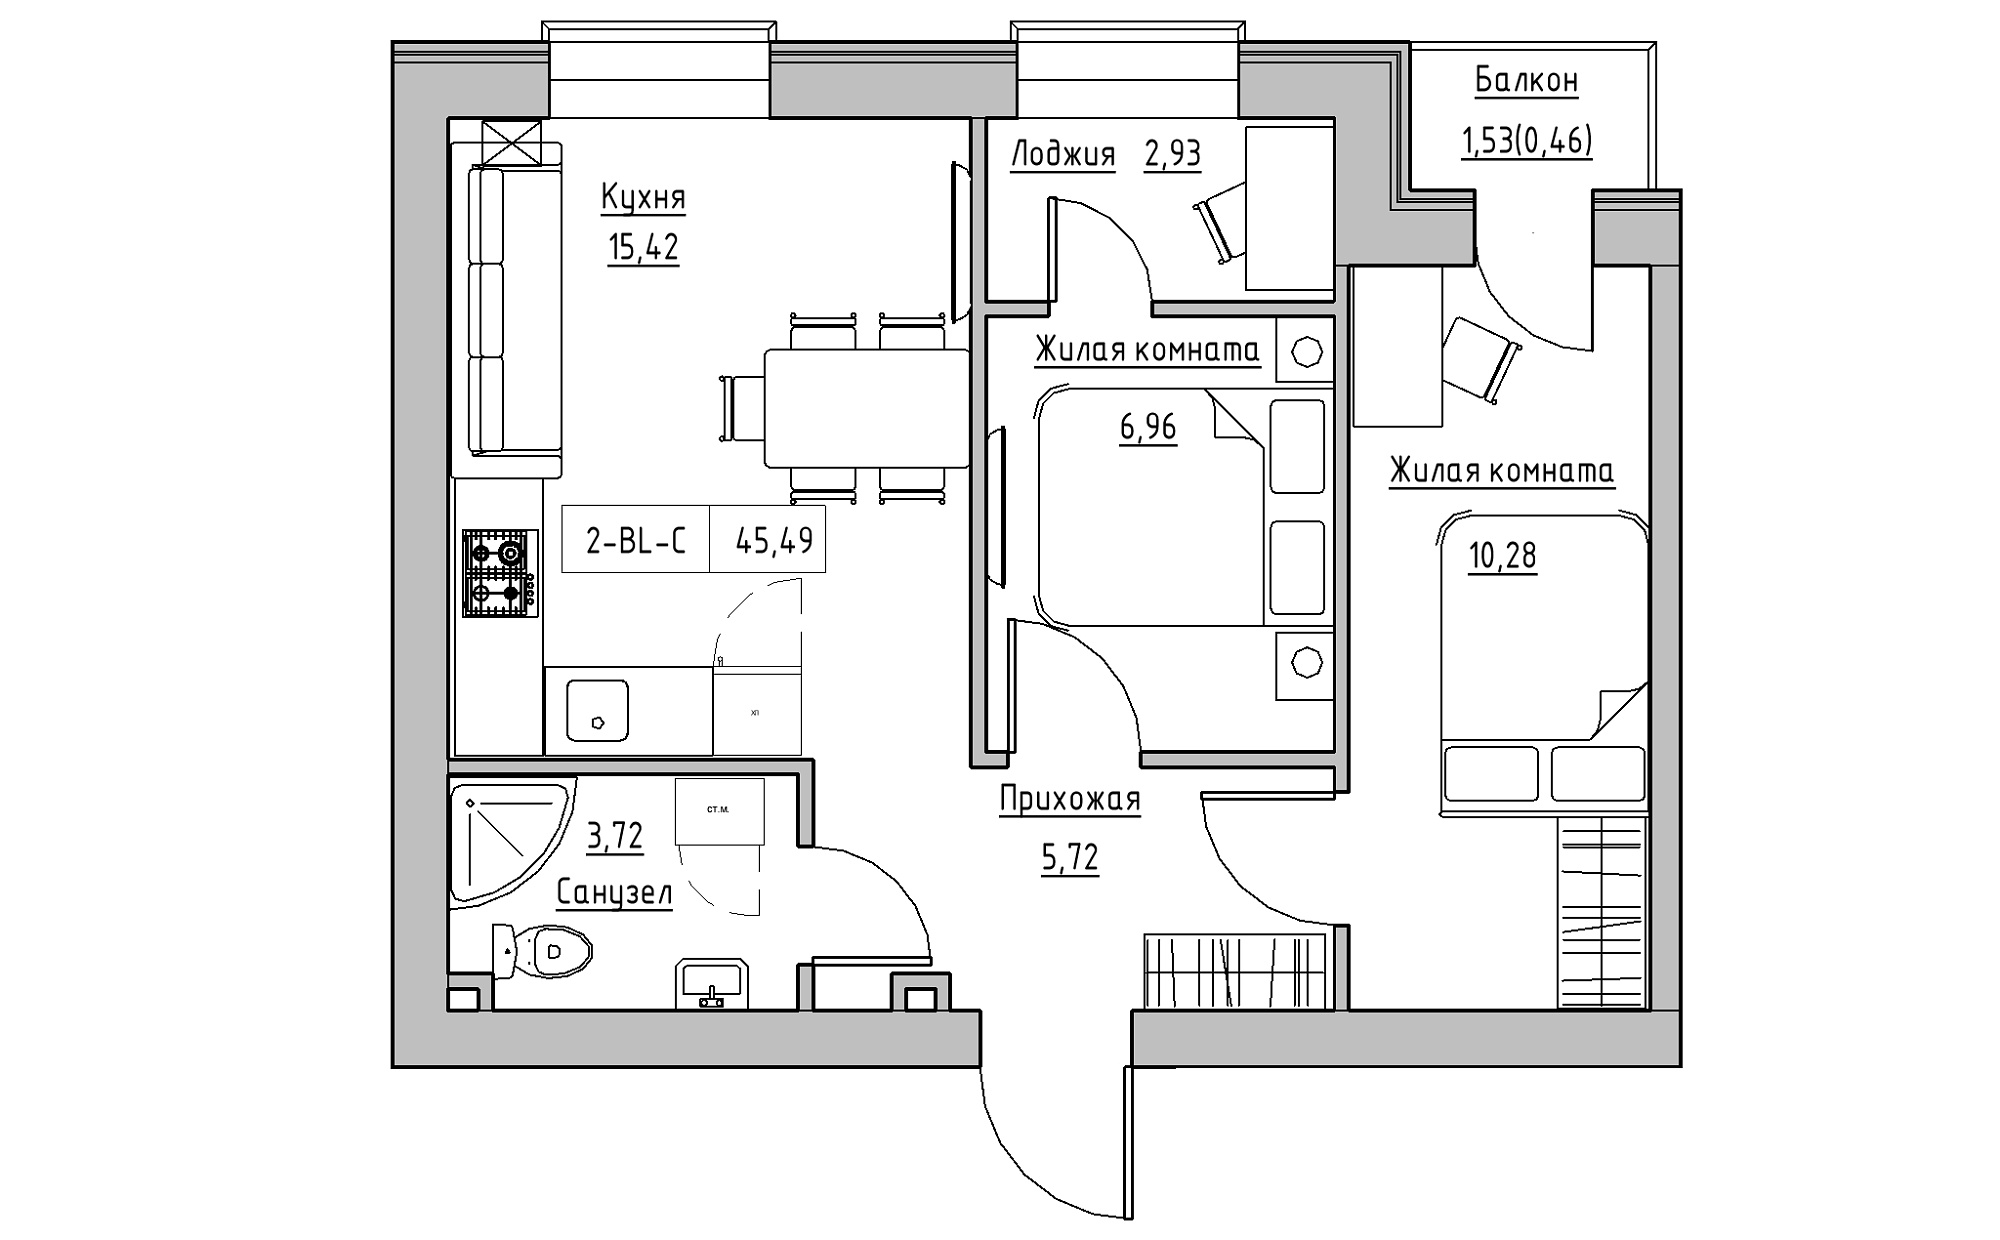 Планування 2-к квартира площею 45.49м2, KS-022-04/0008.